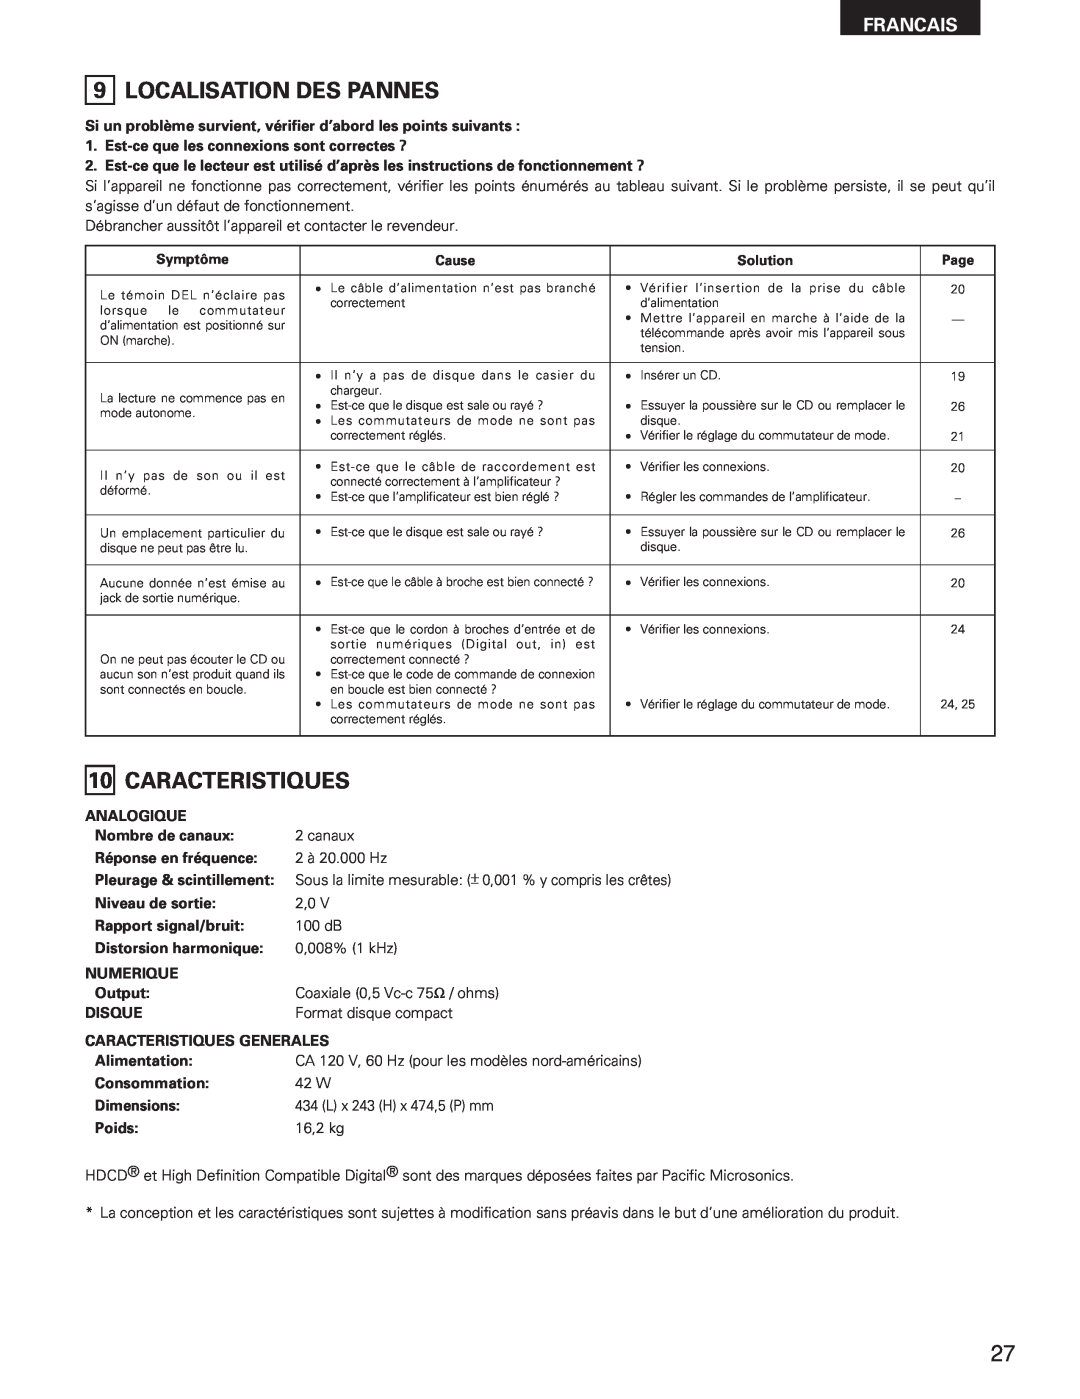 Denon DCM-5001 manual Localisation Des Pannes, Caracteristiques, Francais 